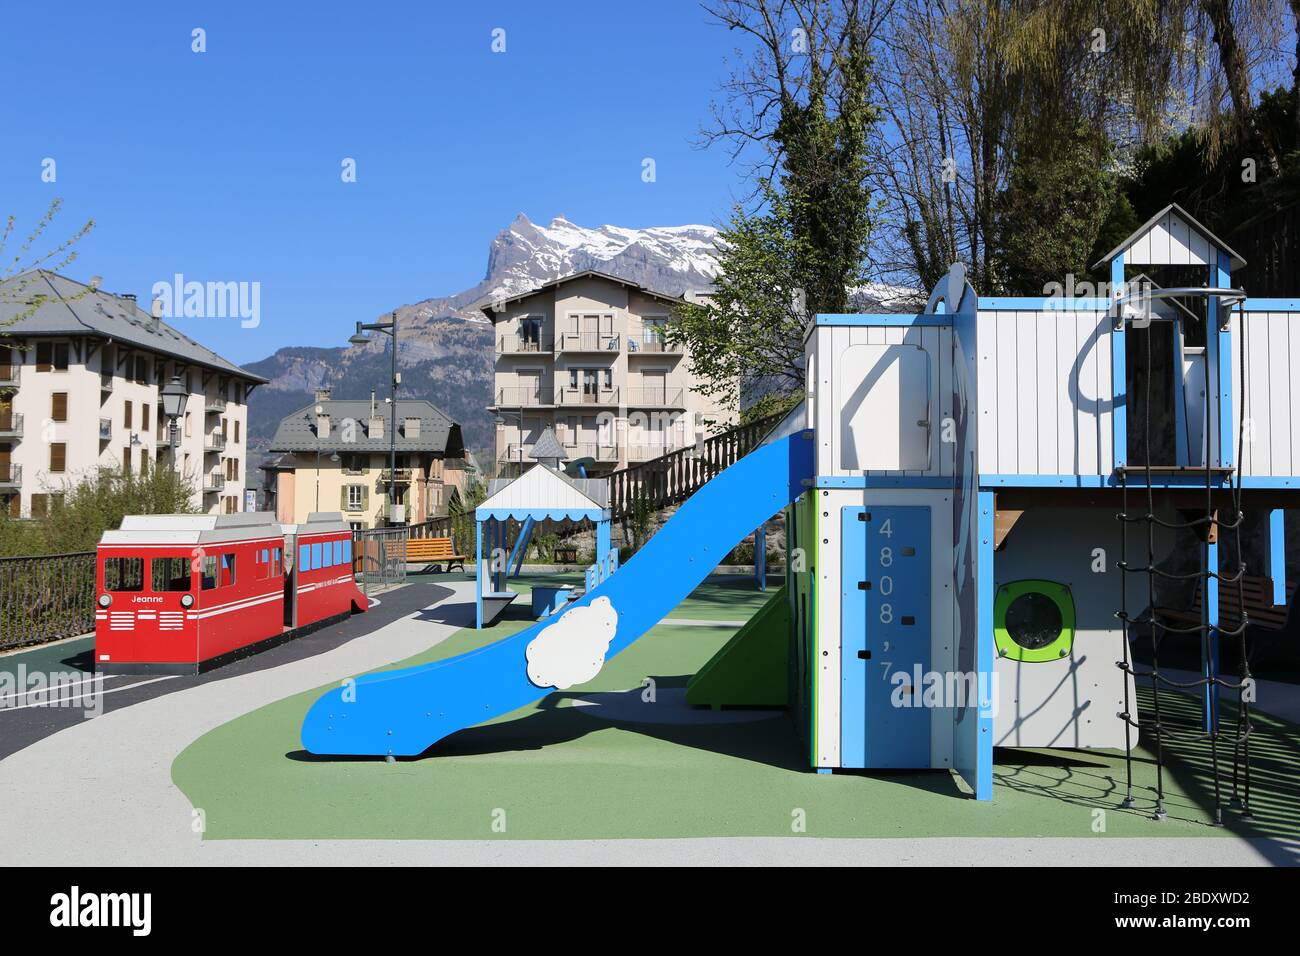 Aire de jeux. Jardin d'Enfants. Jardin du Mont-Blanc. Saint-Gervais-les-Bains. alta Savoia. Francia. Foto Stock